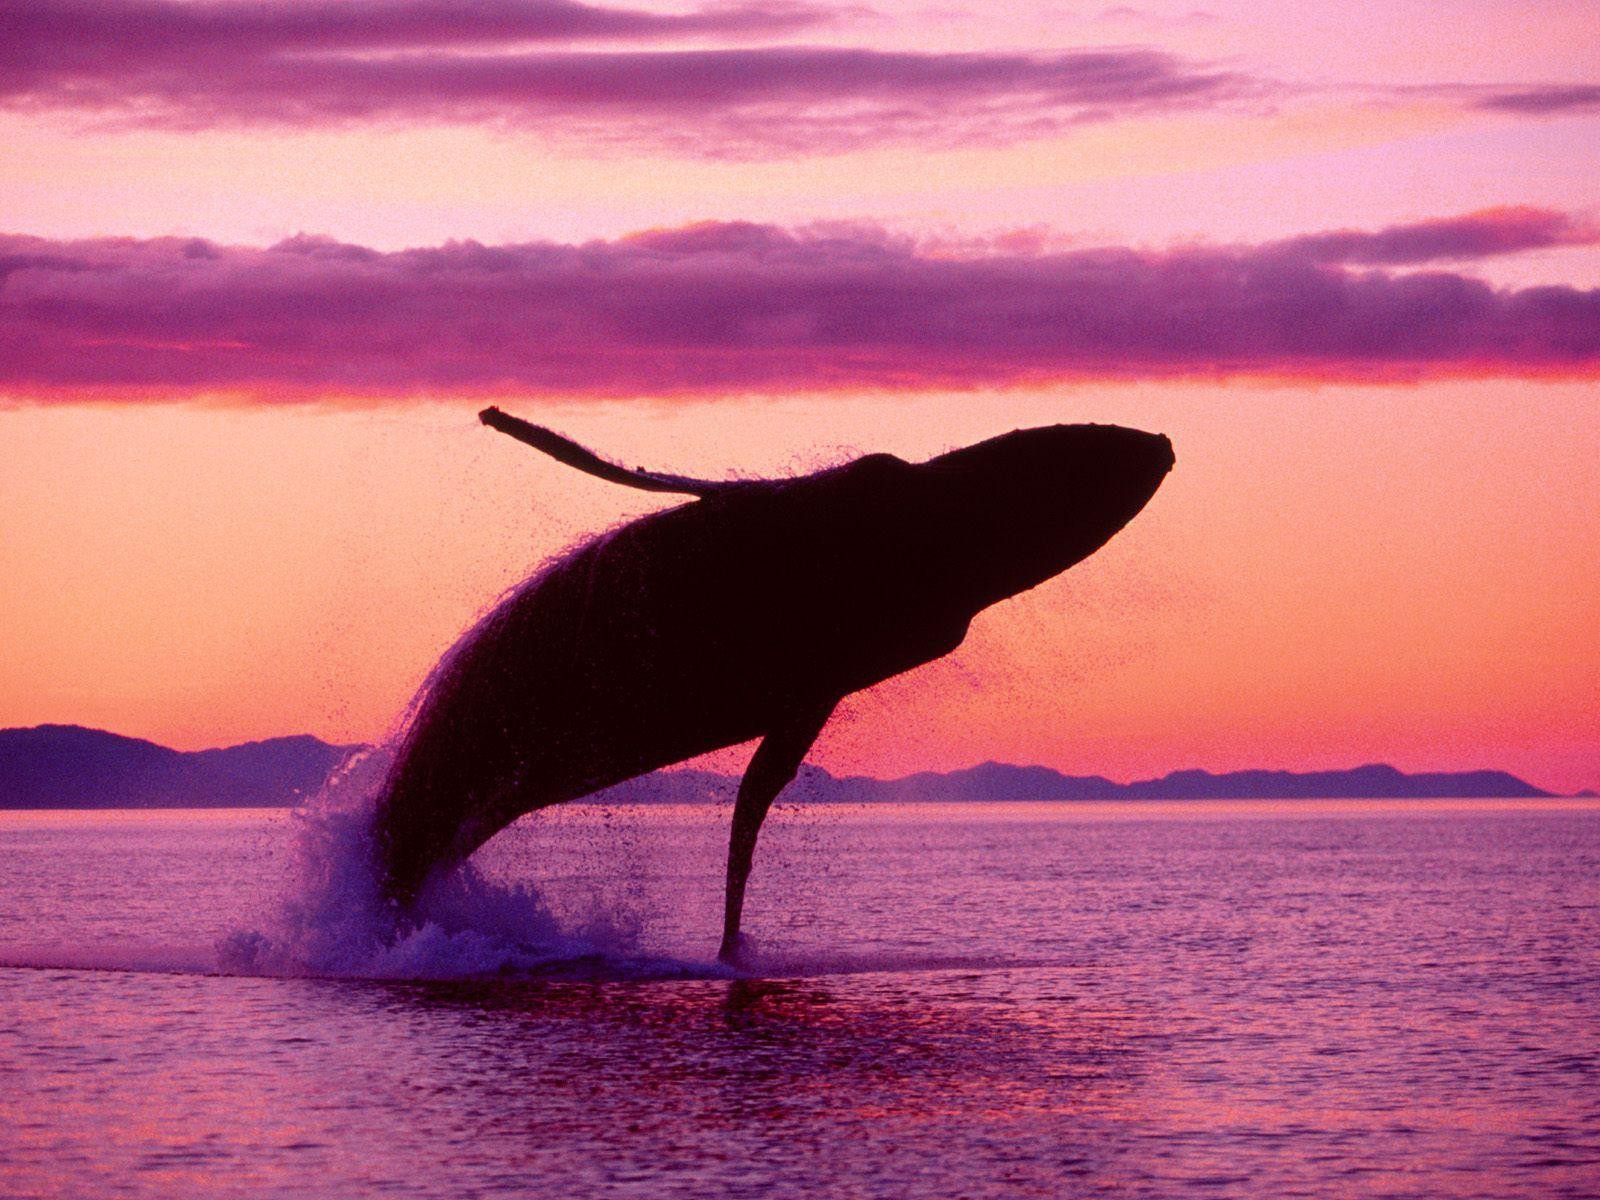 Ngất ngây với bức ảnh cá voi lưng gù phi thân dựng đứng trên mặt biển - Ảnh 10.